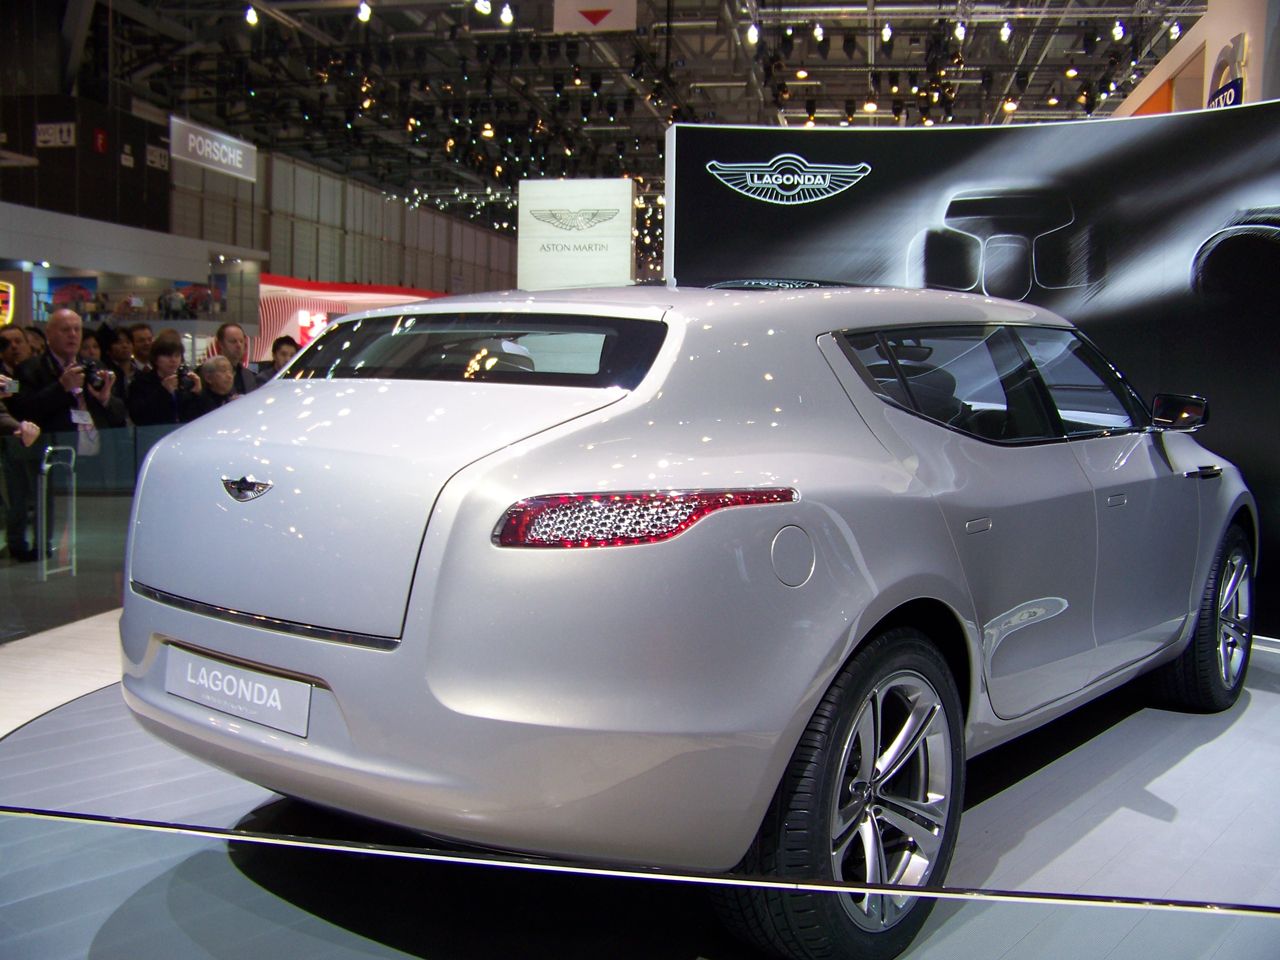 2009 Lagonda Concept